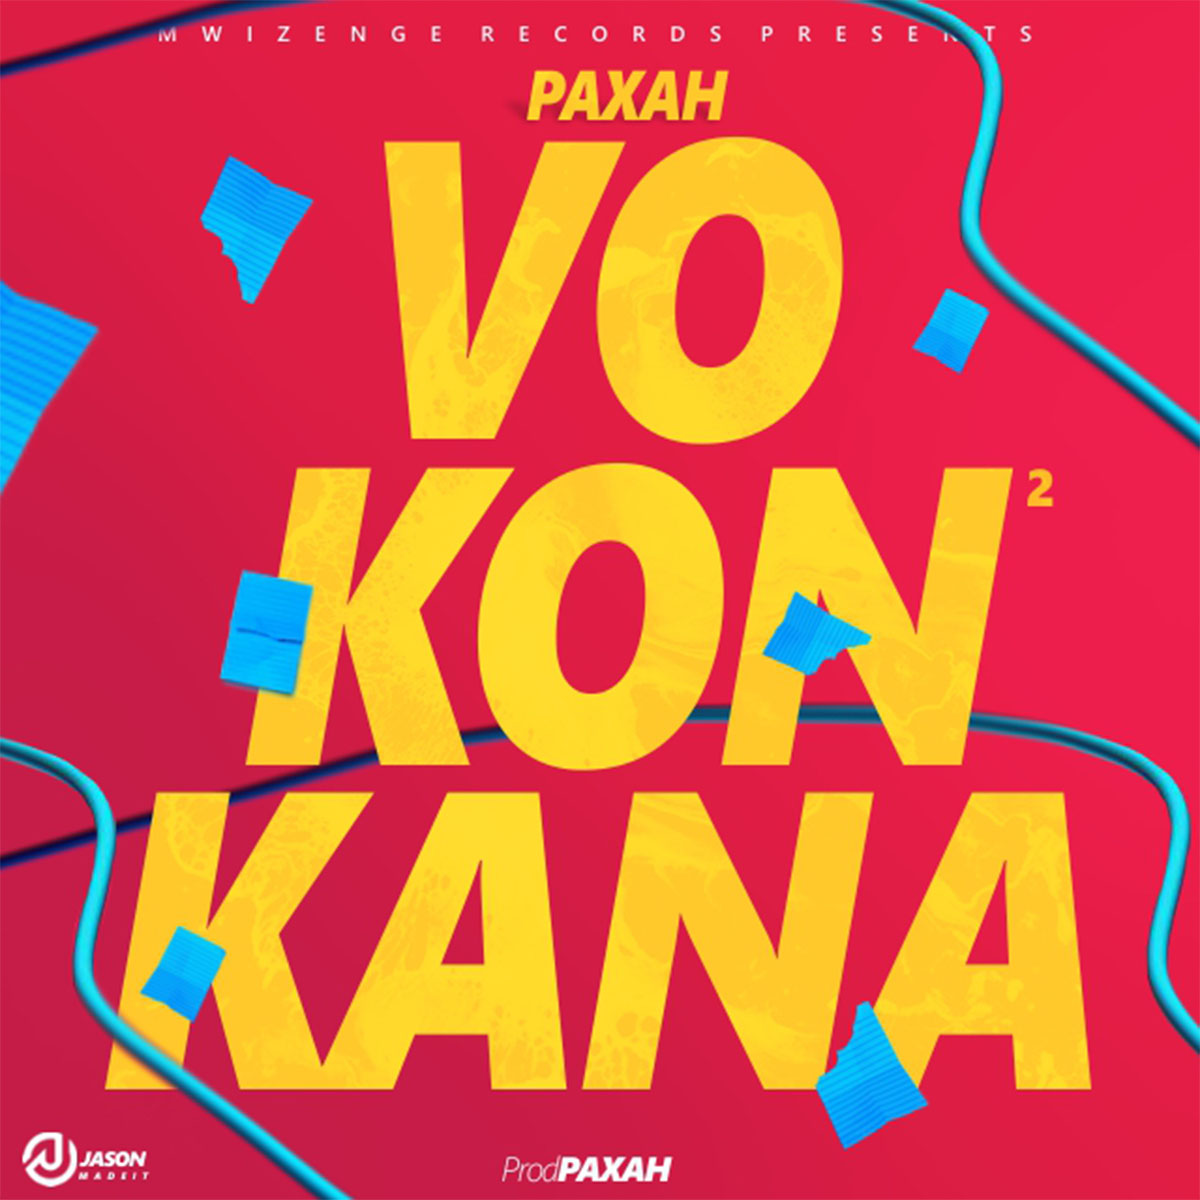 Paxah - Vokonkana